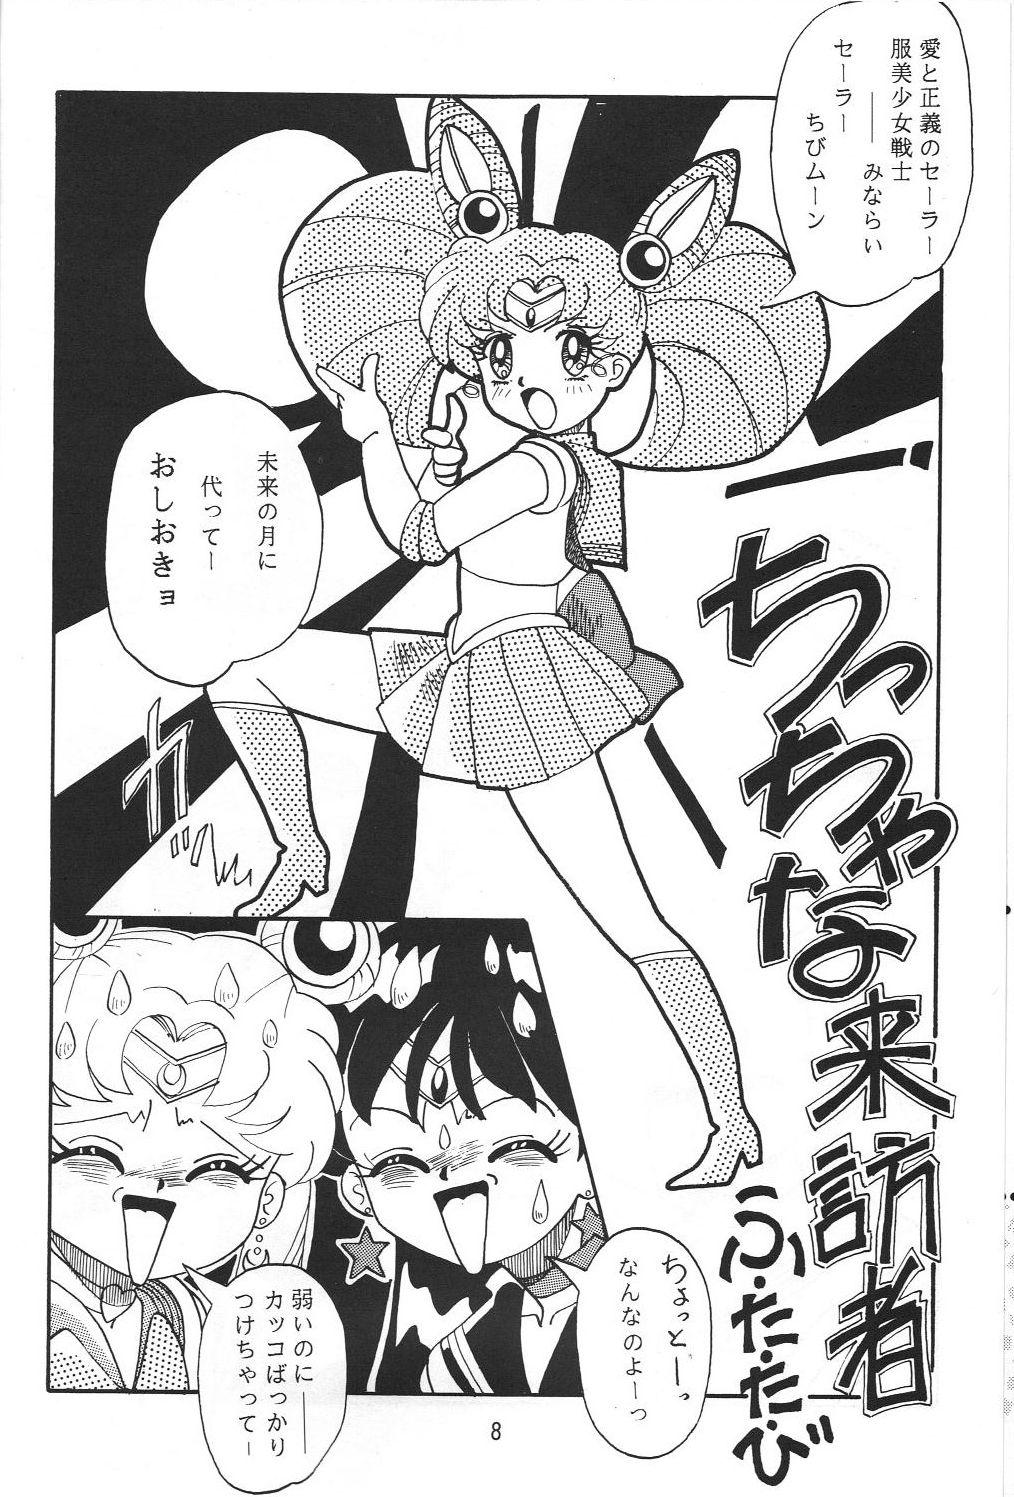 Nice Jiyuu Tamashii - Sailor moon Ah my goddess Tenchi muyo Bj - Page 7